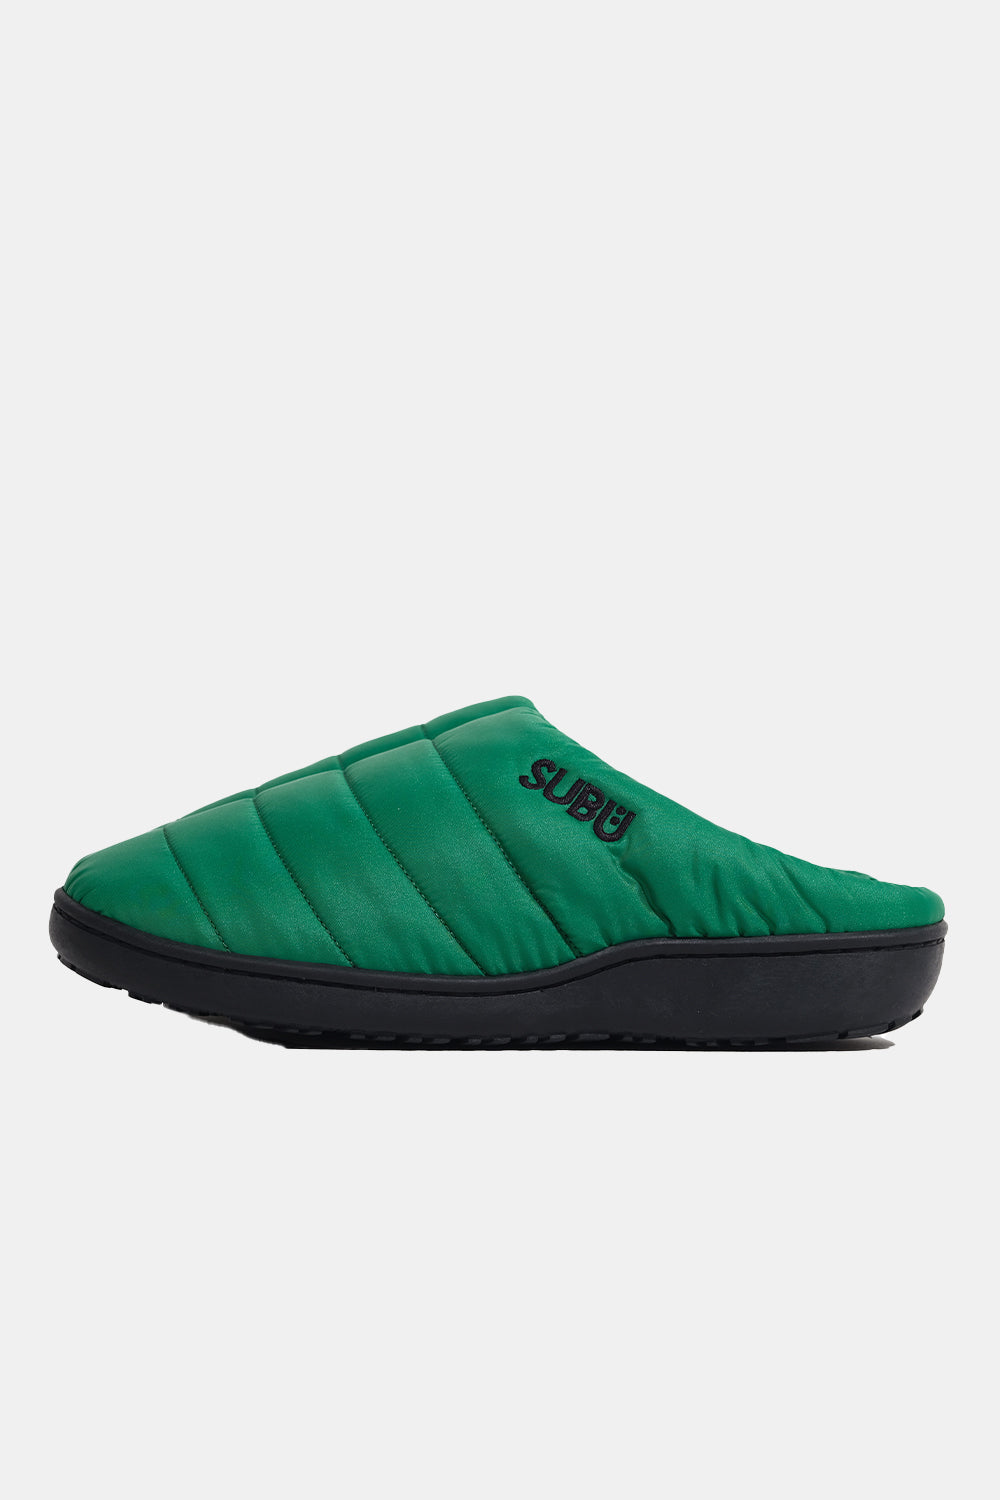 SUBU Indoor Outdoor Slippers (Green)